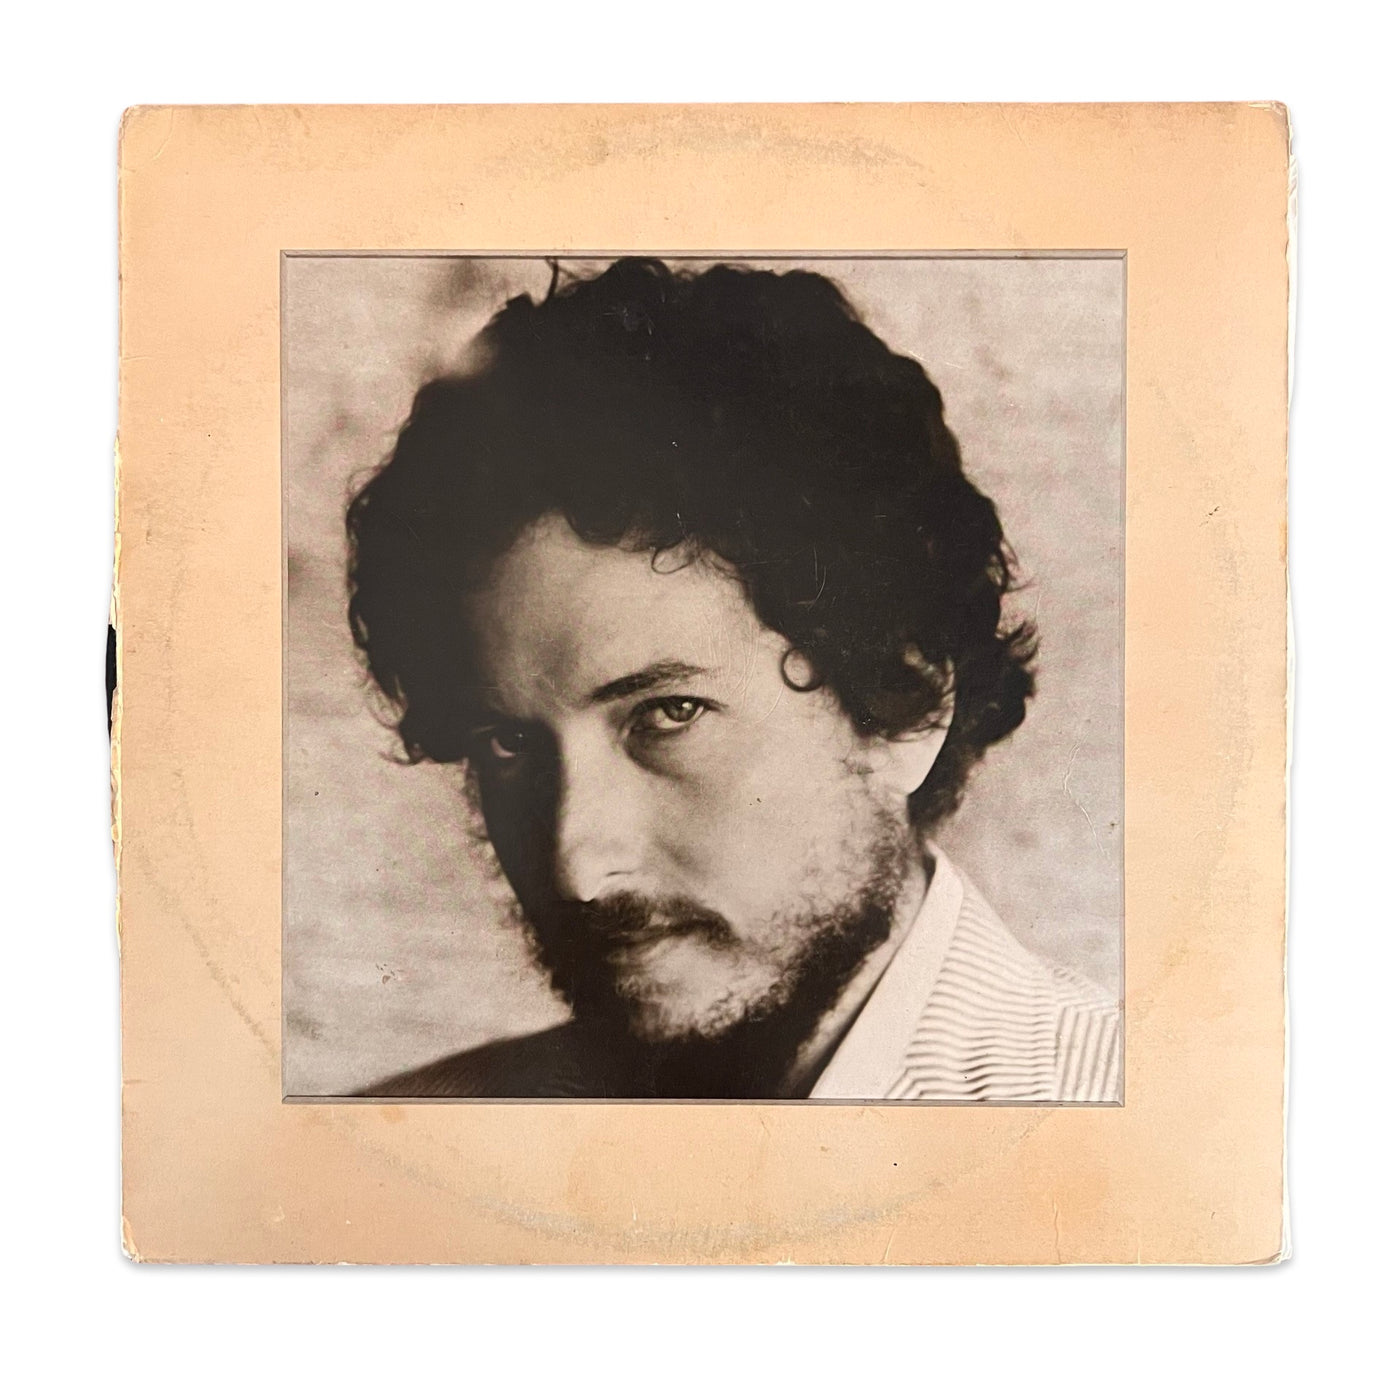 Bob Dylan – New Morning (1970, Pitman Pressing)